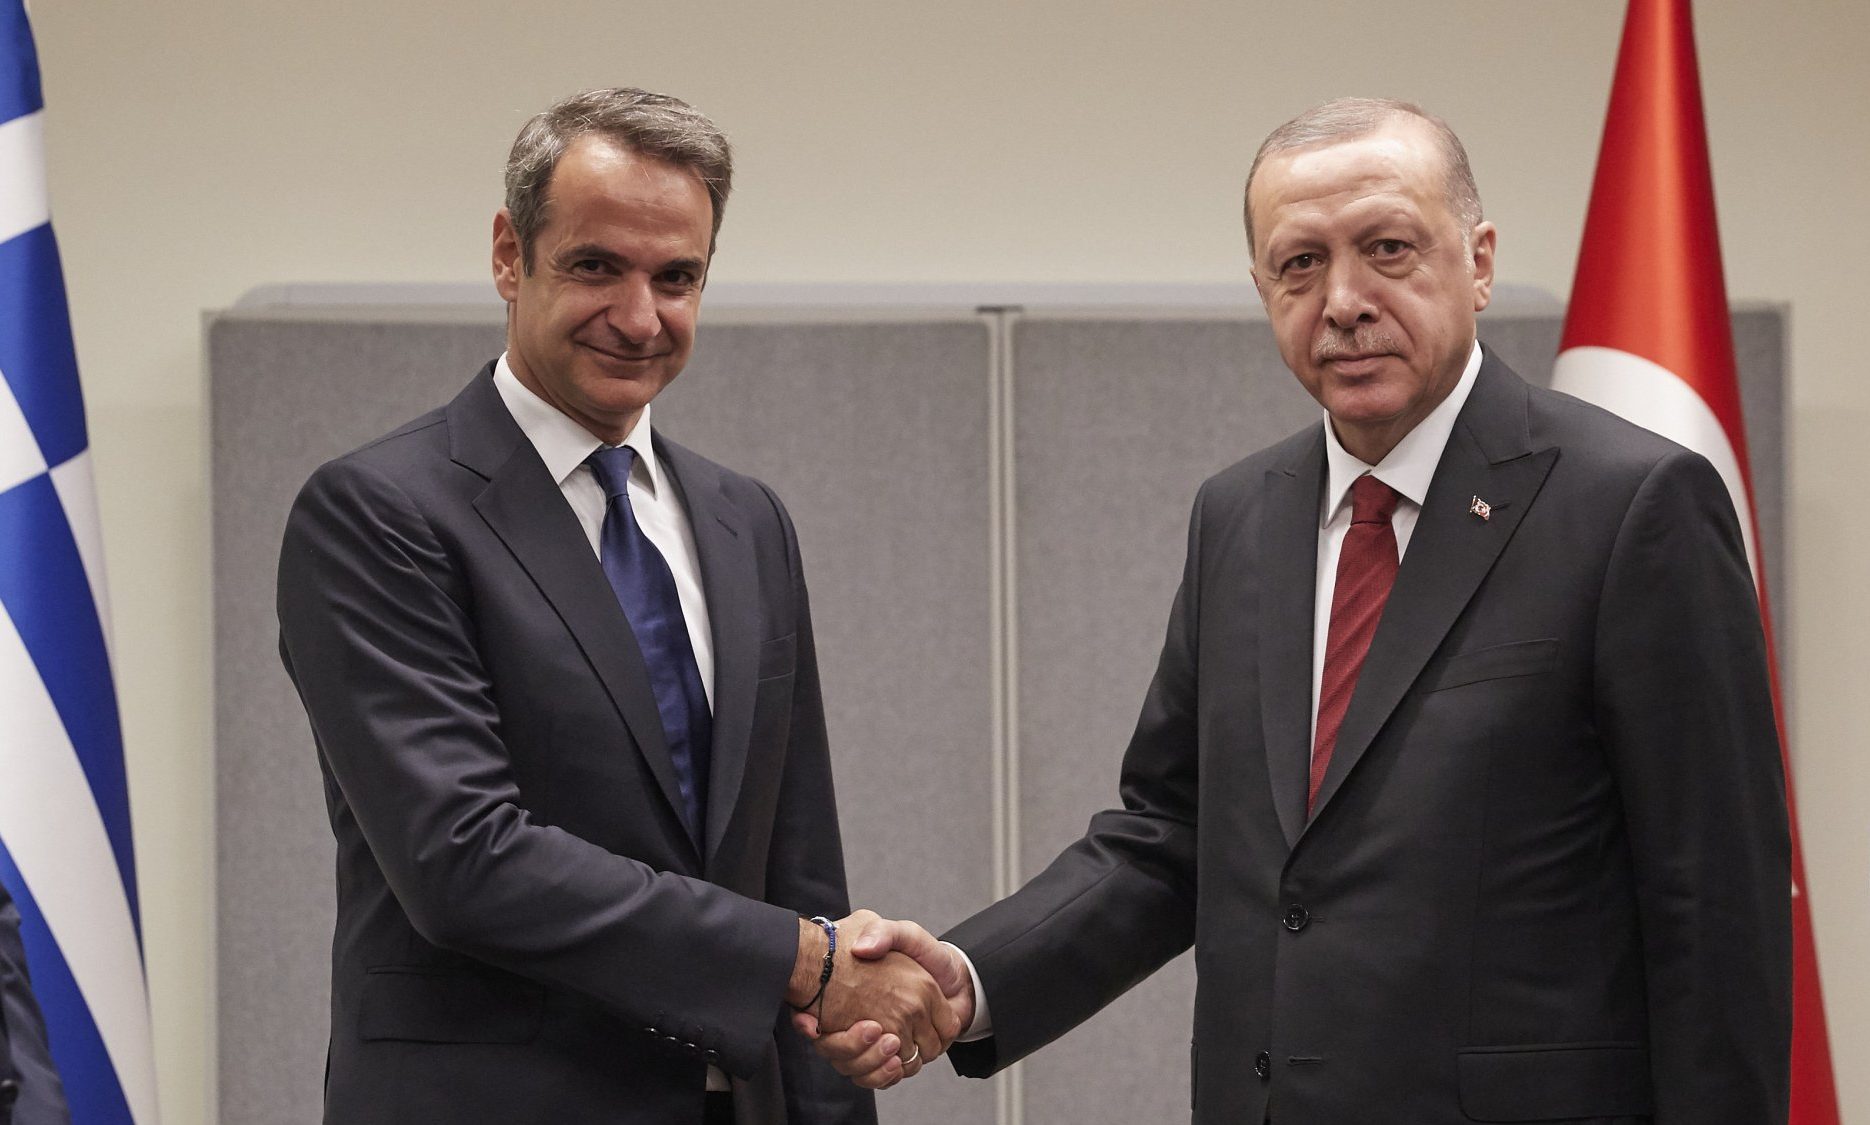 Ανώνατο Συμβούλιο Συνεργασίας Ελλάδας – Τουρκίας: Οι βασικοί άξονες του προγράμματος